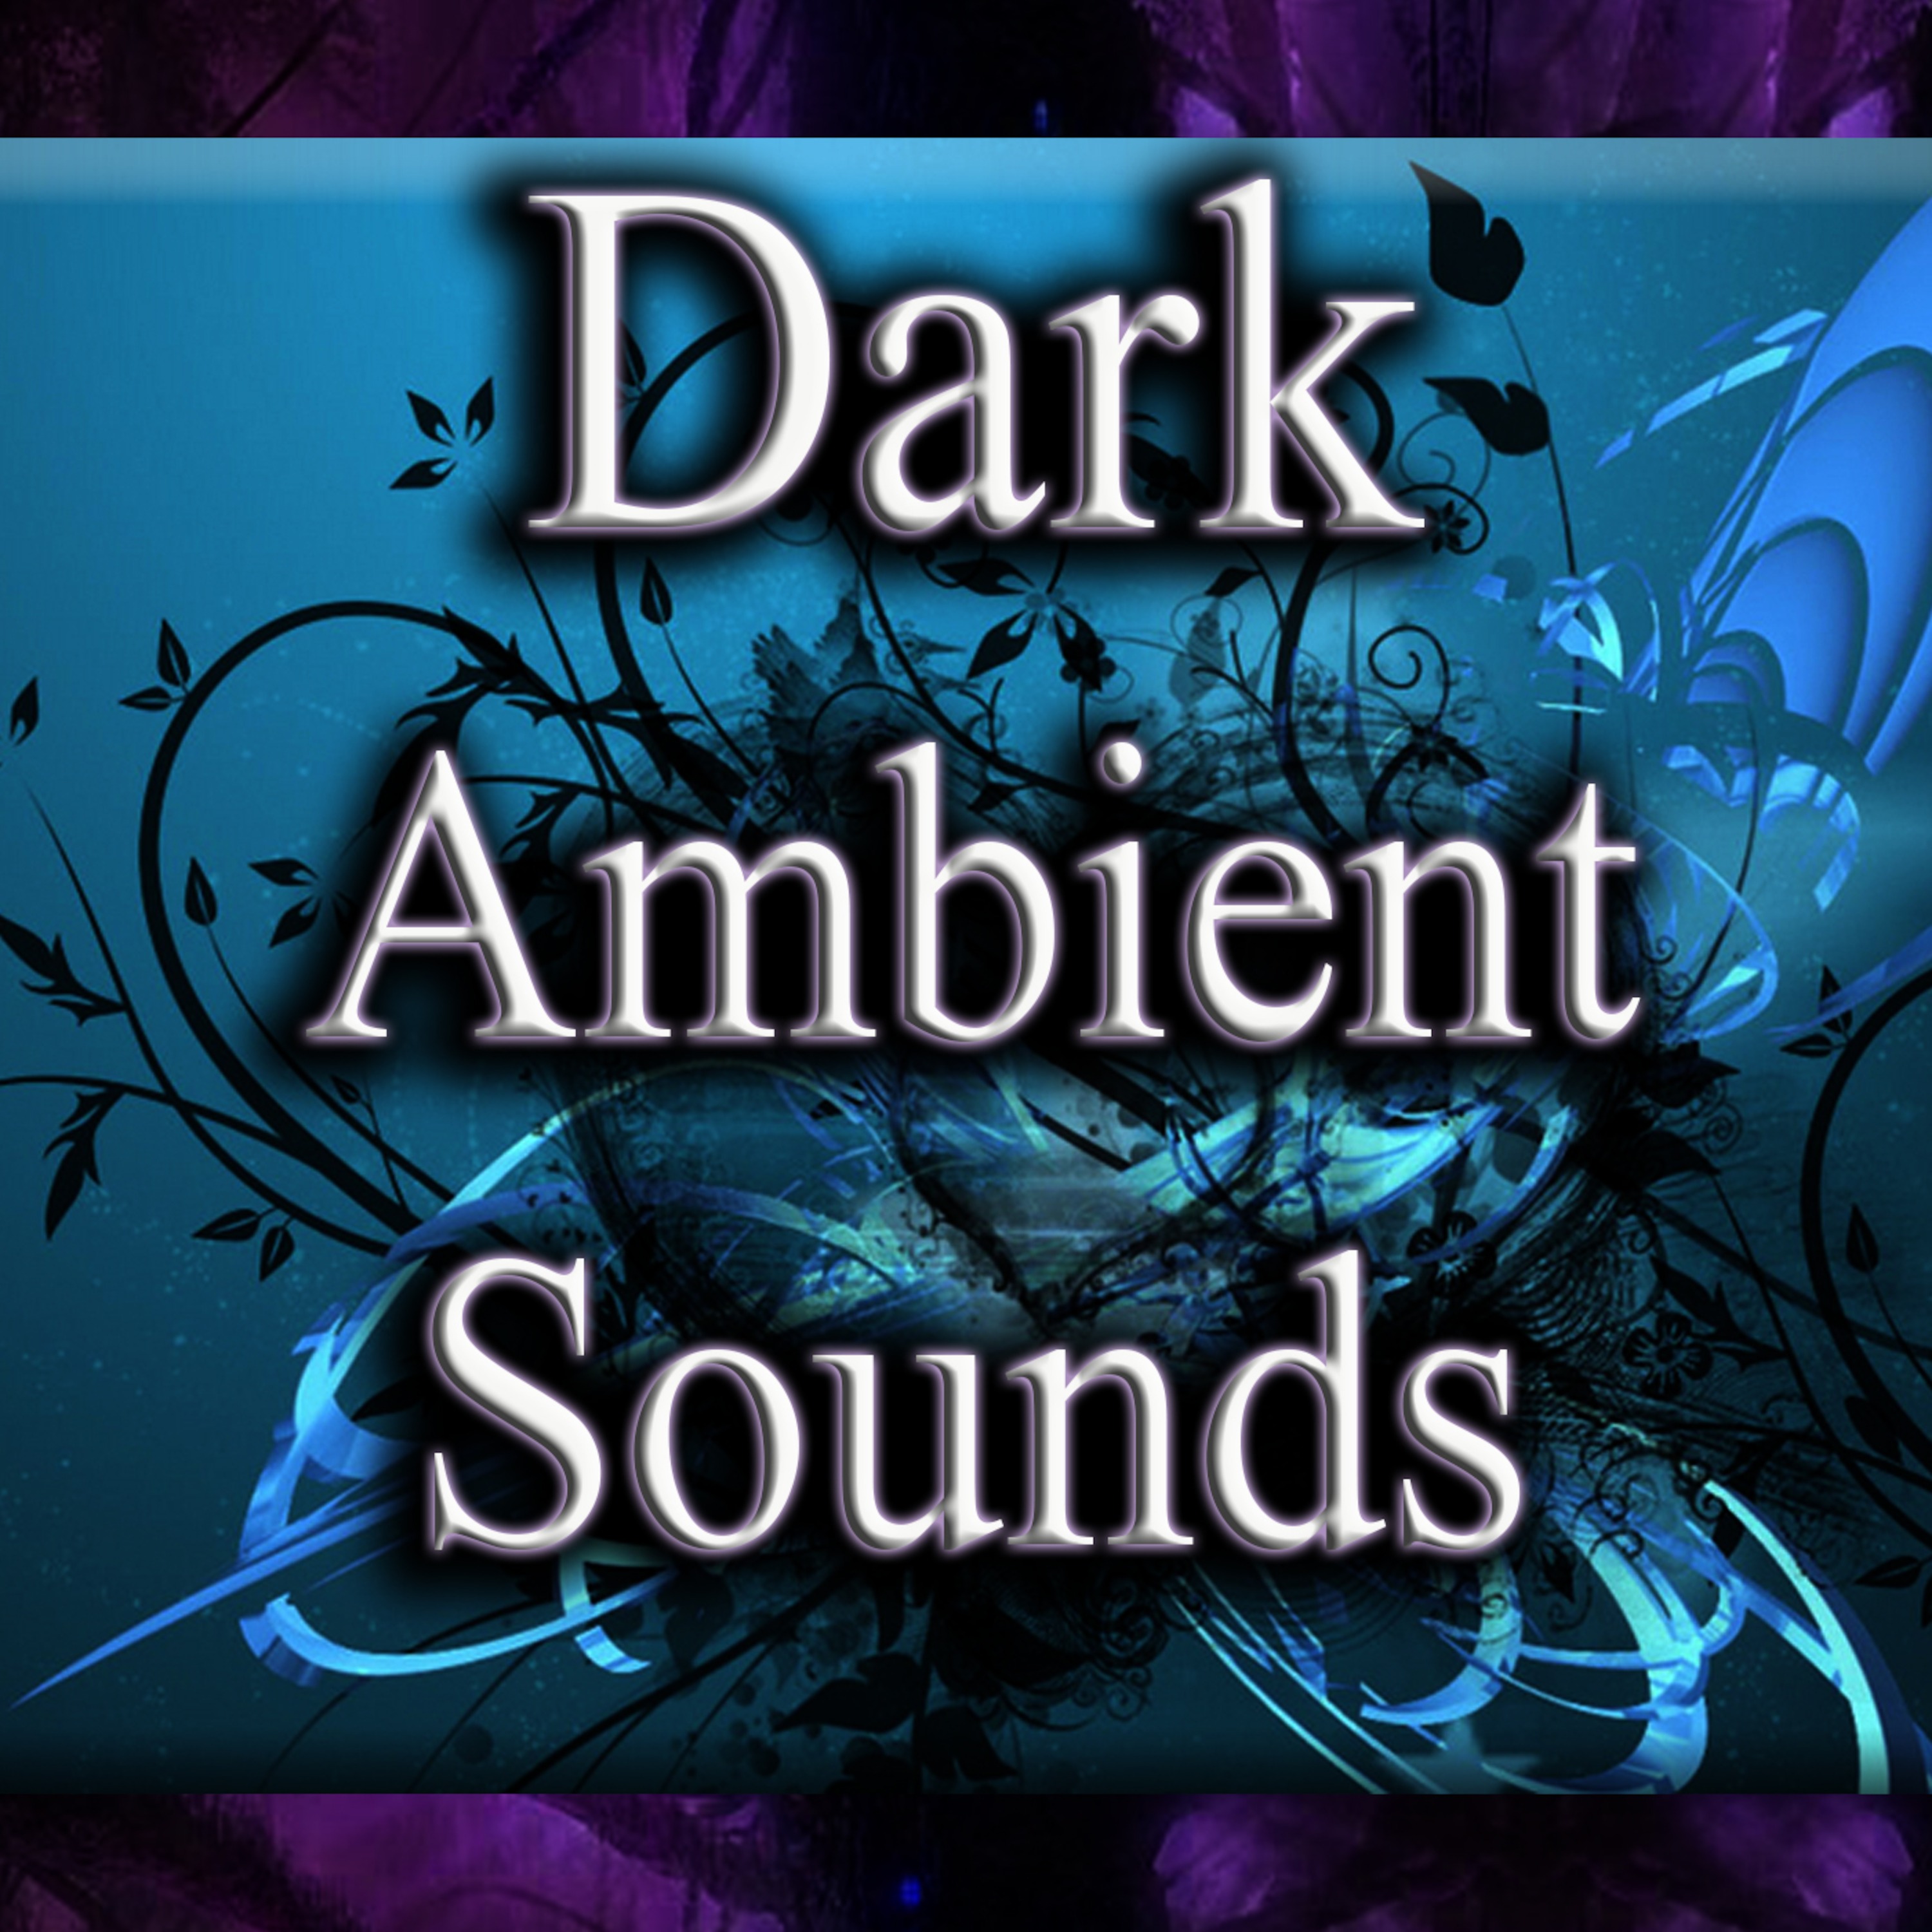 Ambient sound 4. Dark Ambient. Dark Ambient Music. Sound Ambient Sounds. Мод Sound Ambient Sounds.